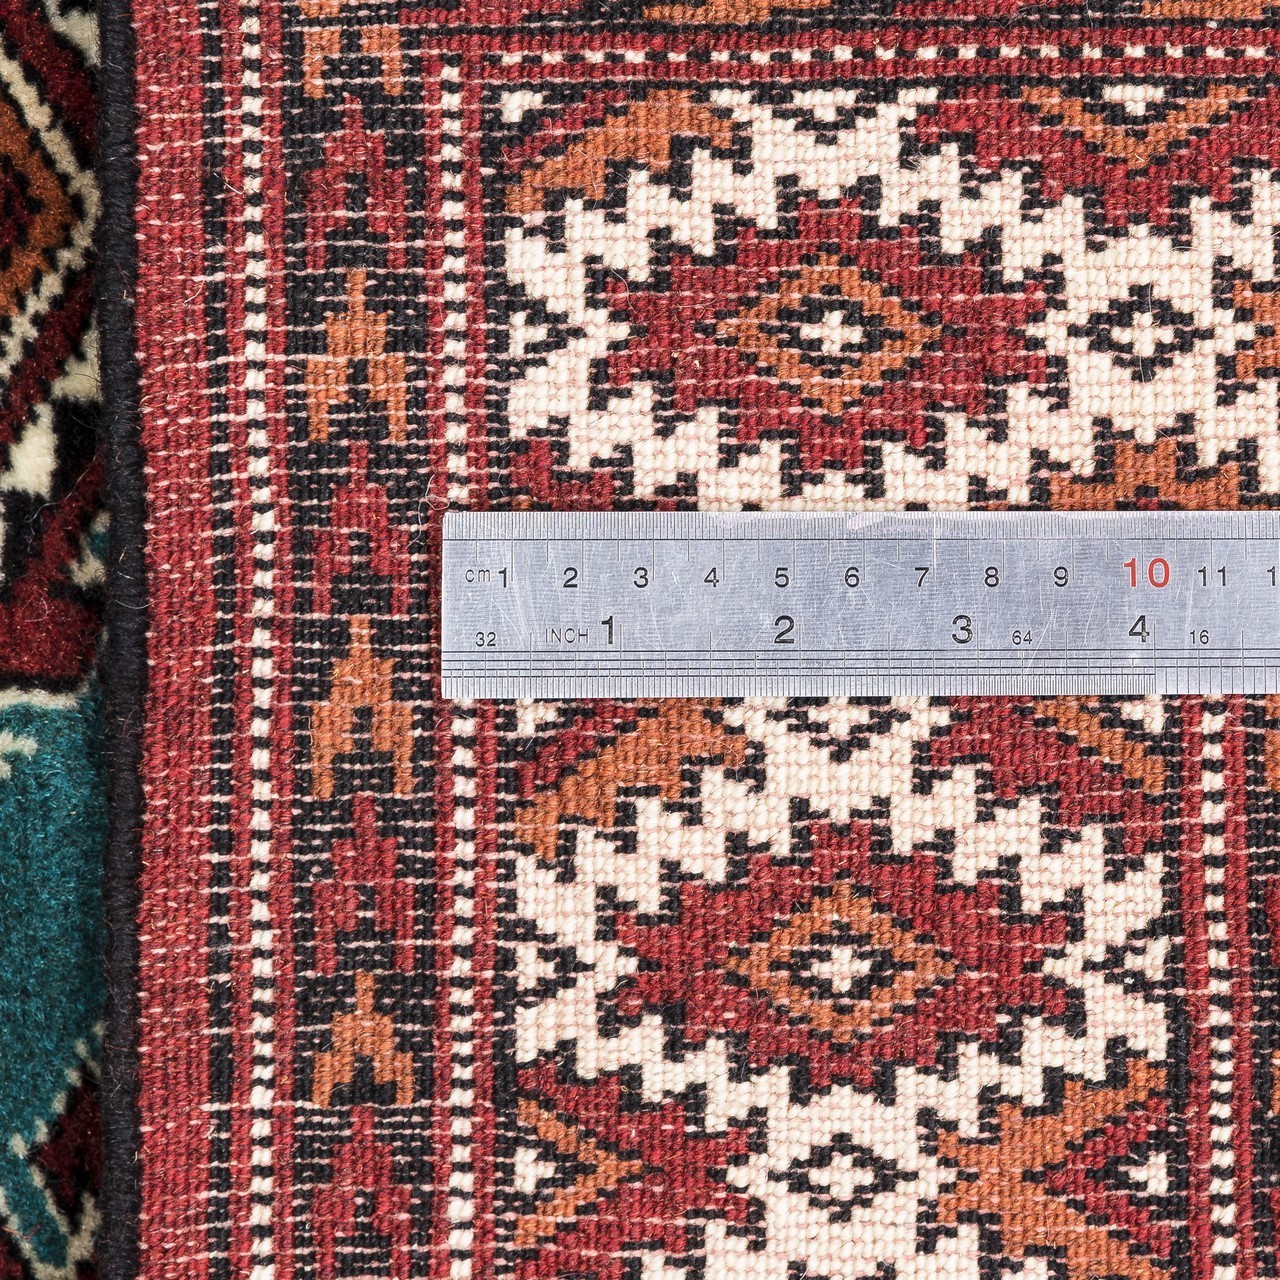 فرش دستبافت دو و نیم متری ترکمن کد 141799